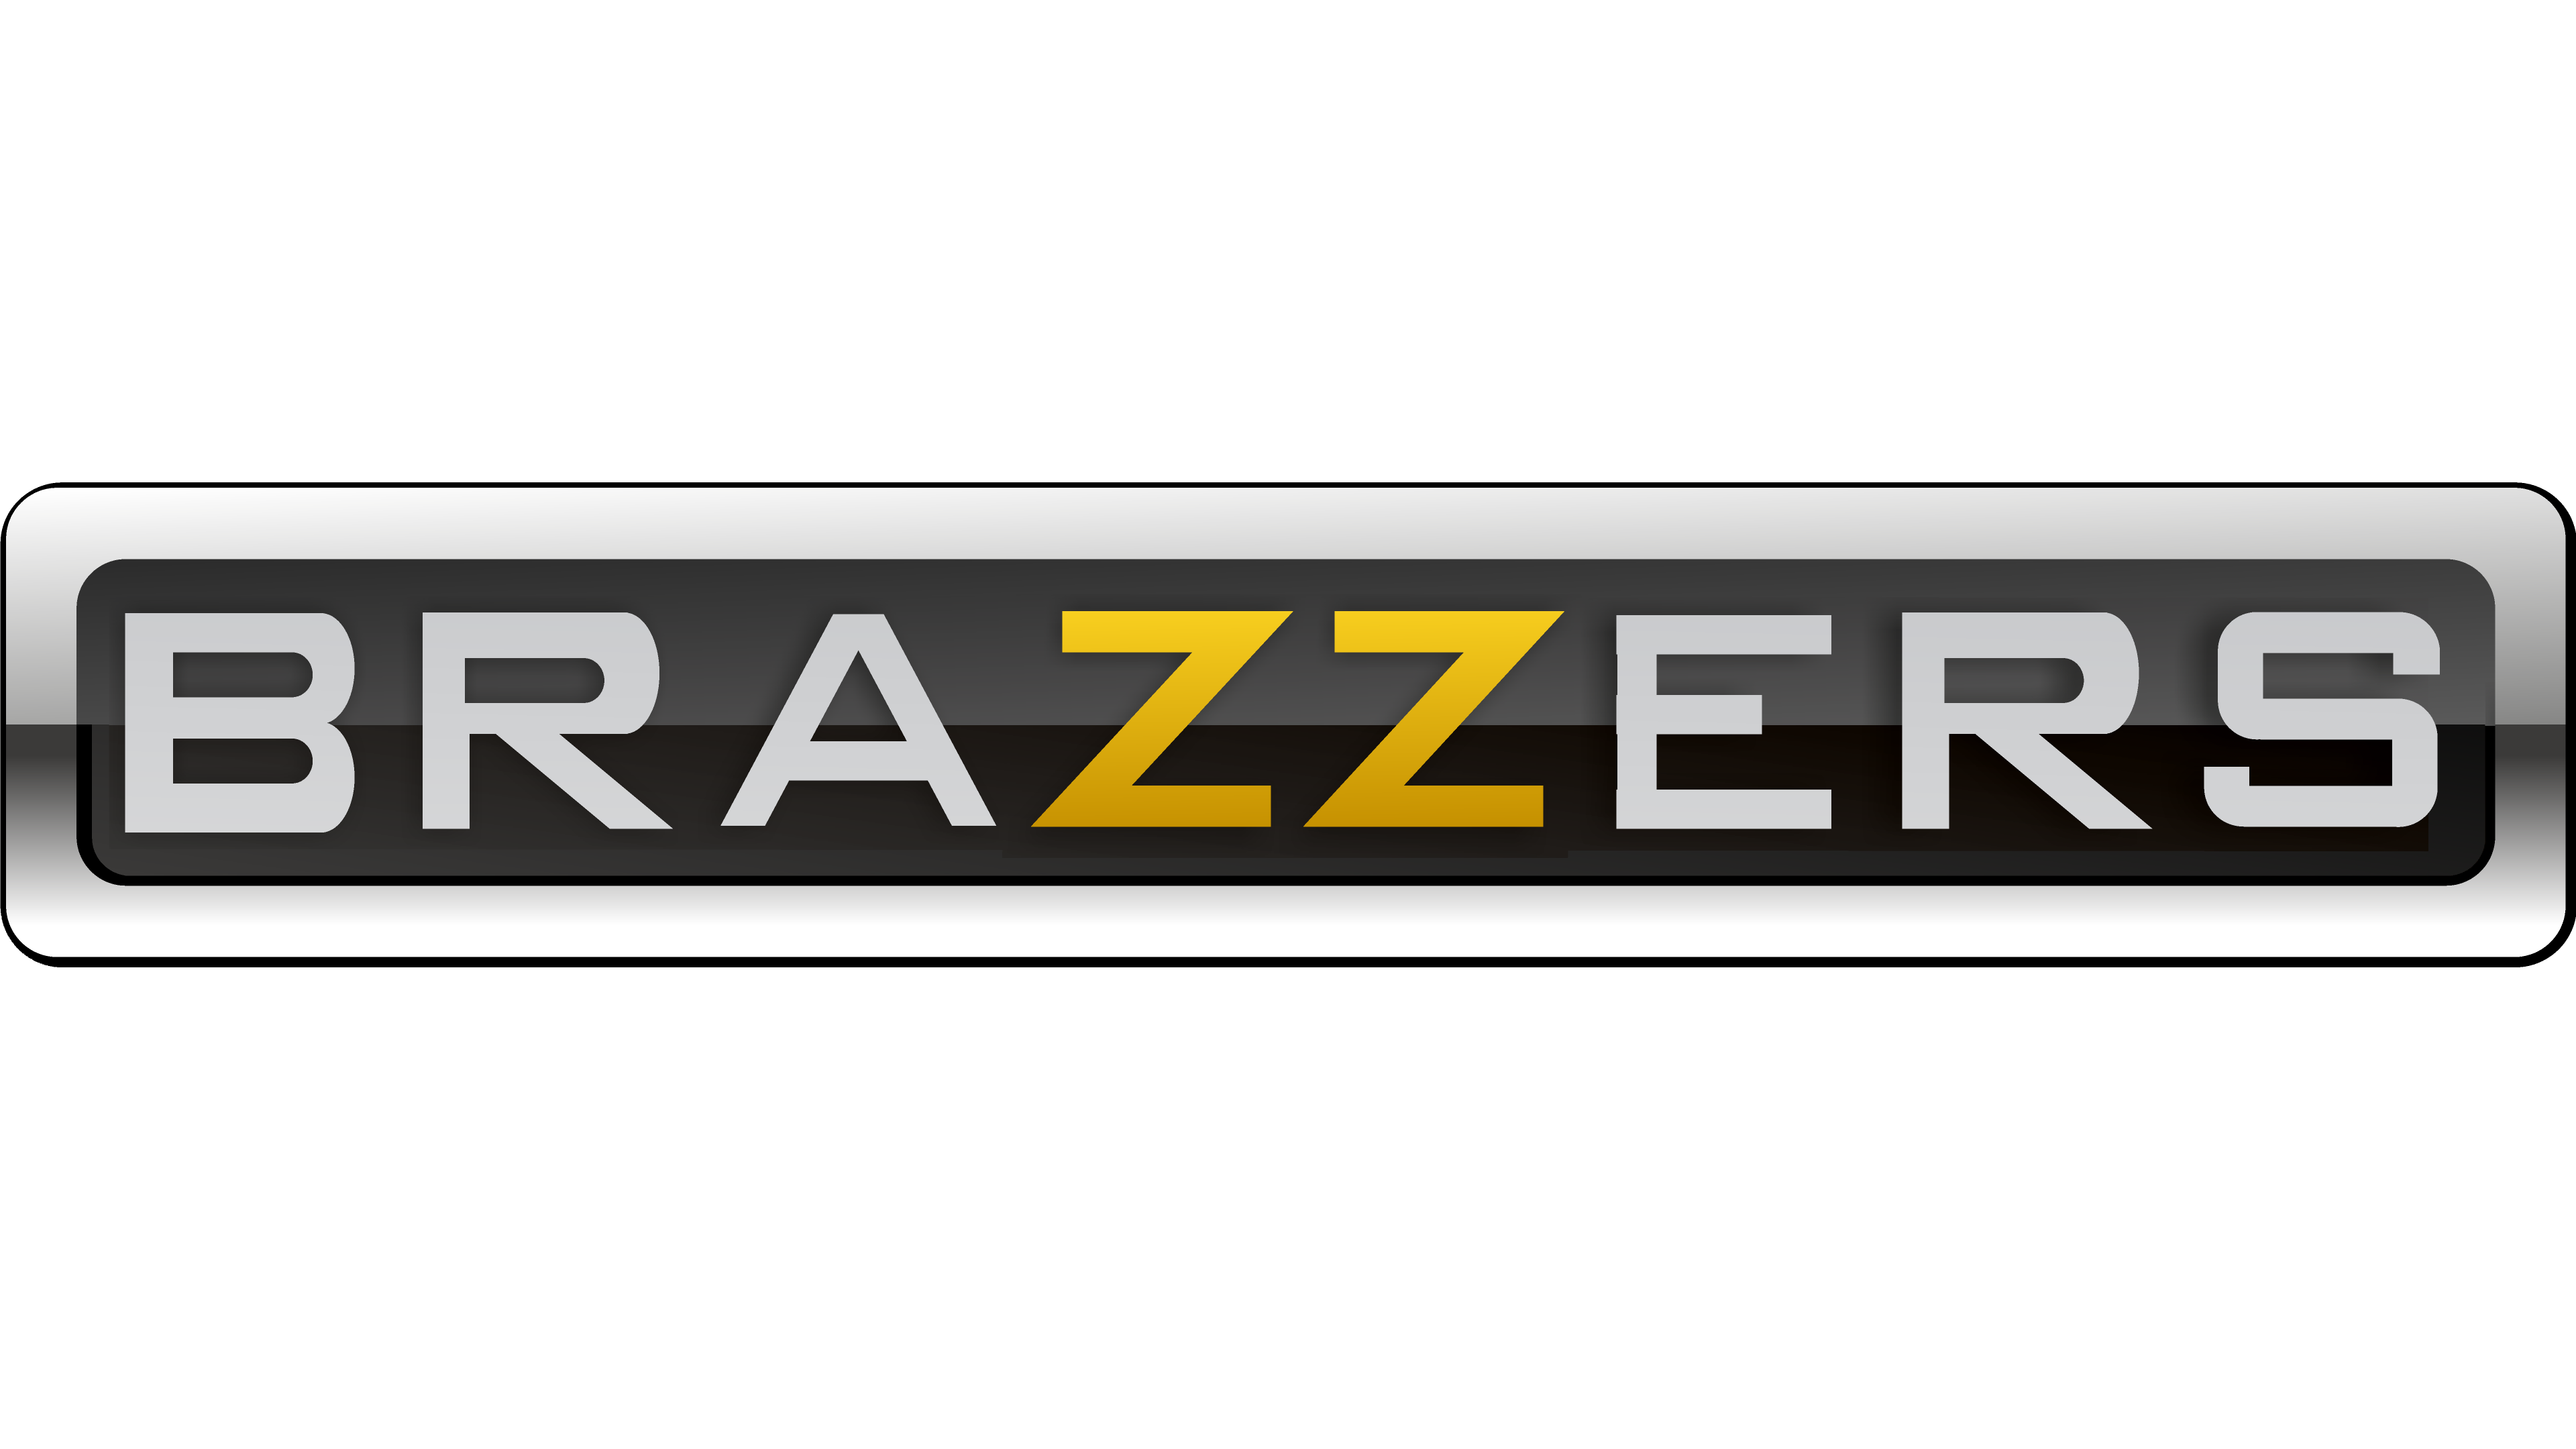 Brazzer hd.com